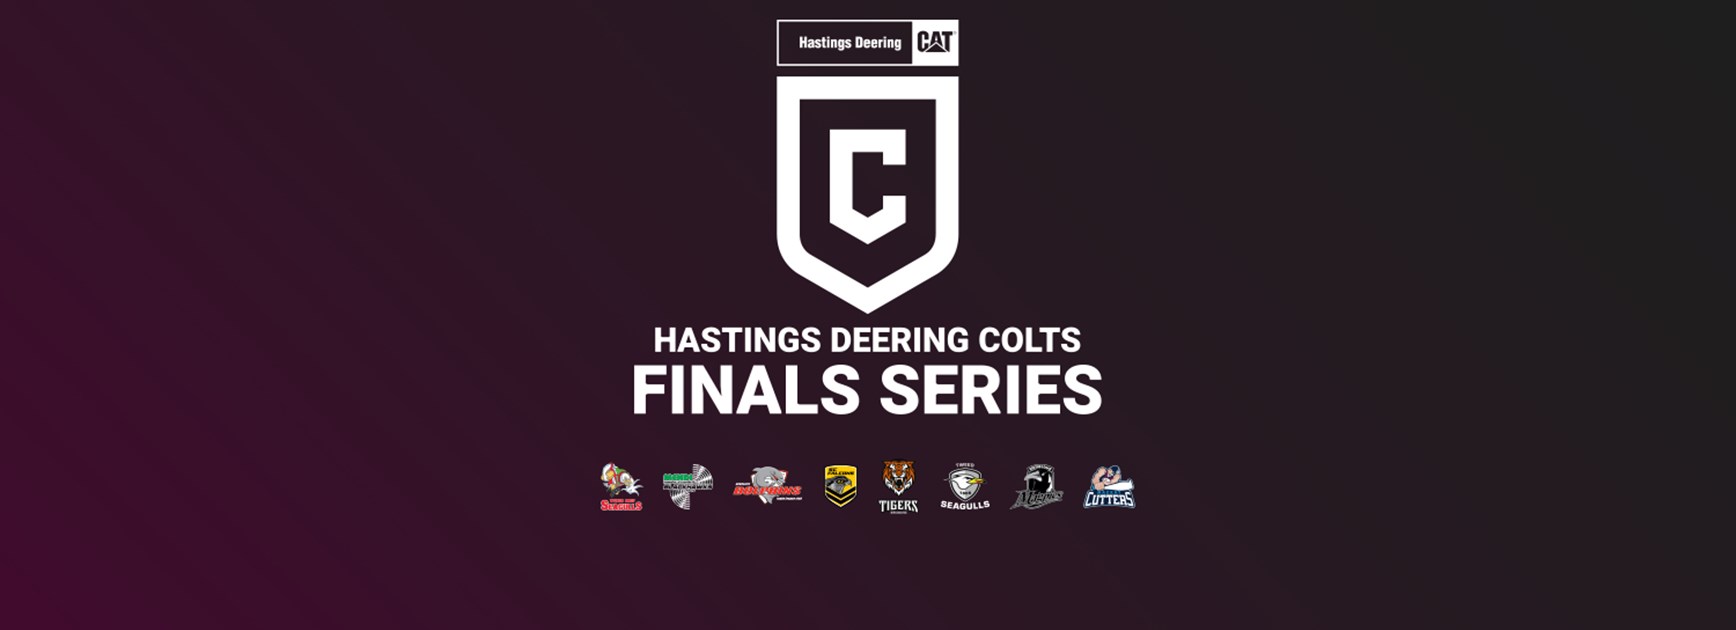 Hastings Deering Colts finals week 1 teams